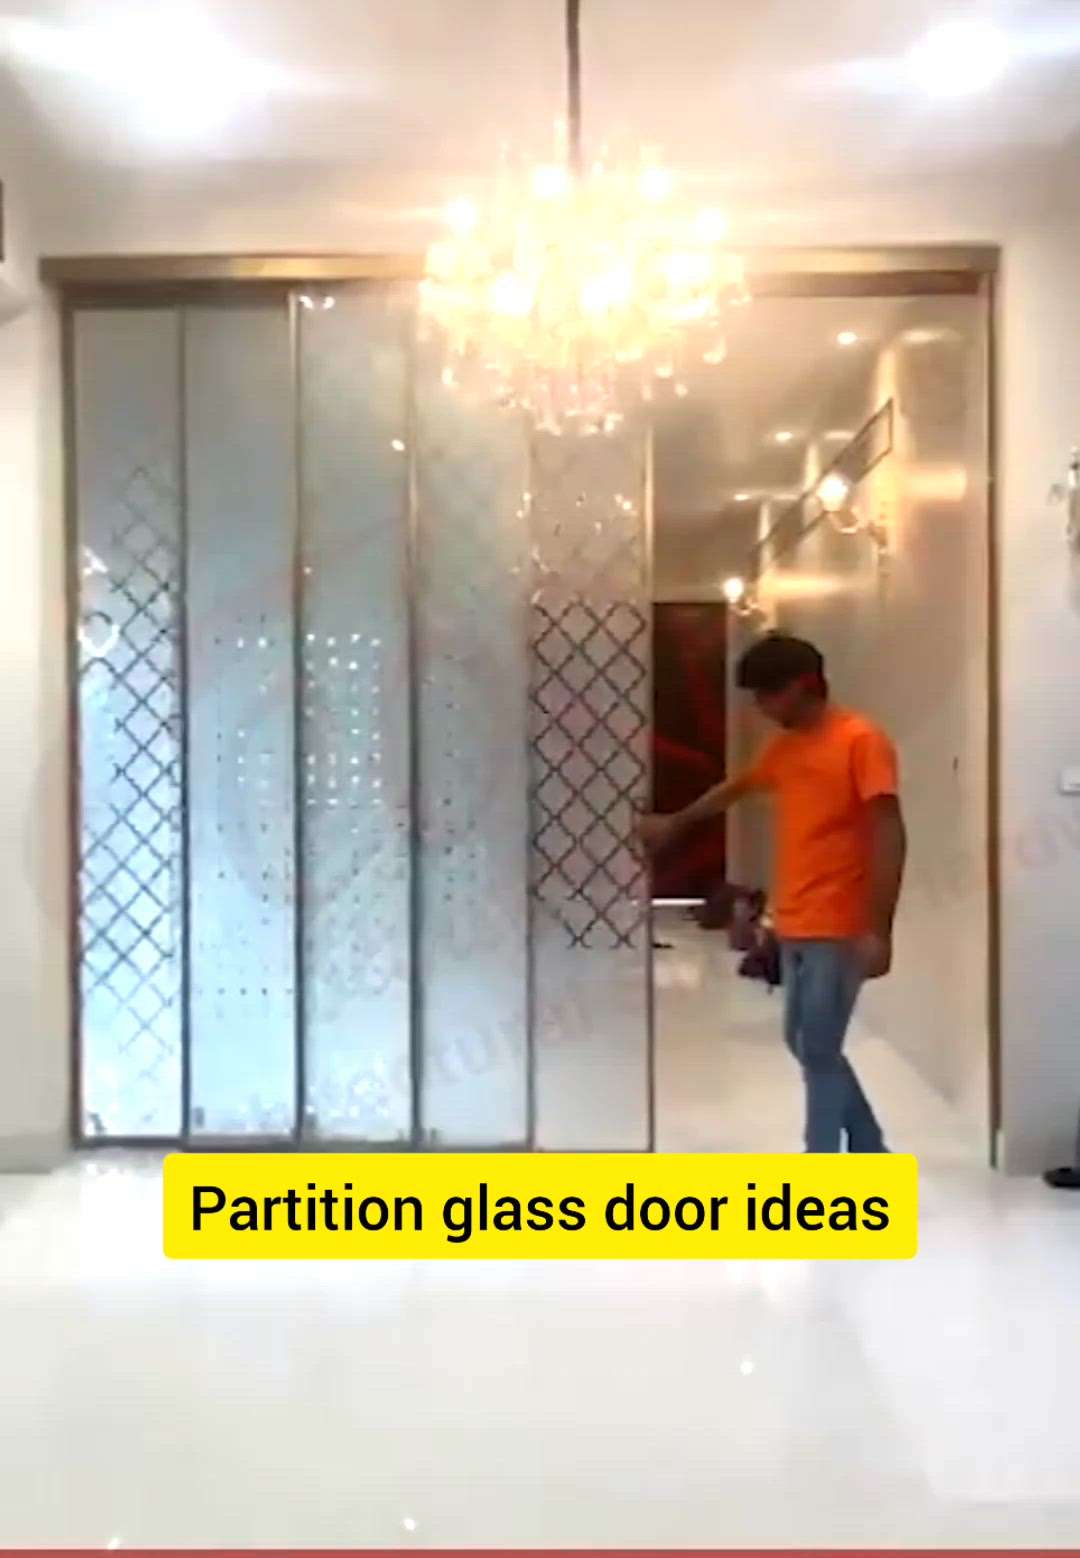 #creatorsofkolo #doors #dos #dont #buy #home #best #GlassDoors #partitiondoors #slidingdoors #tube glassdoors #doorideas #modernhome
#trending #viralvideo